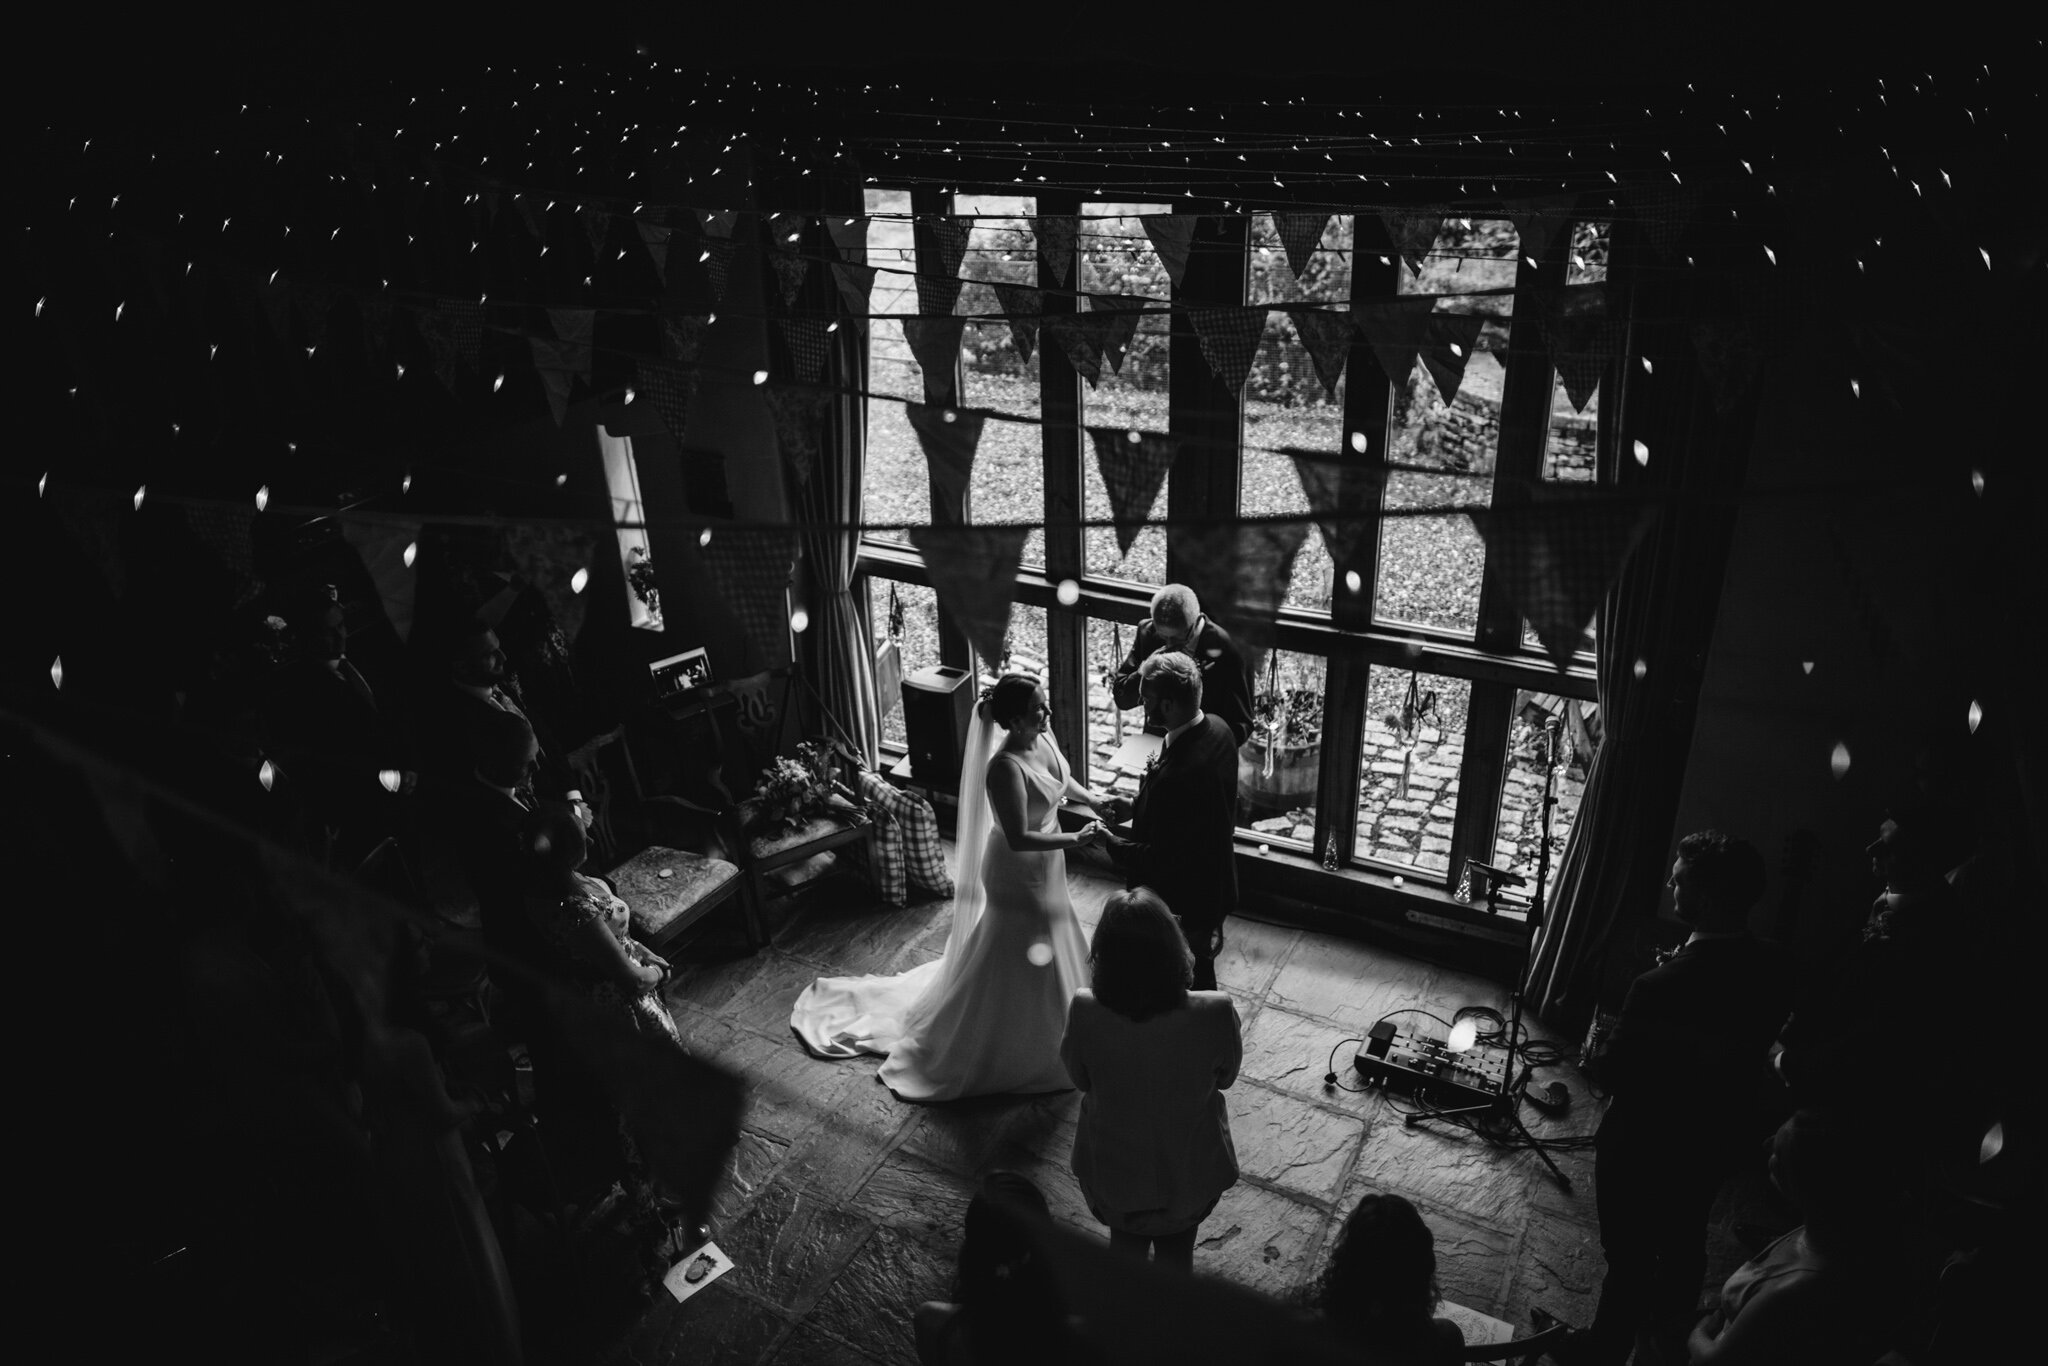 derbyshire-wedding-elopement-photographer-best-2020-26.jpg